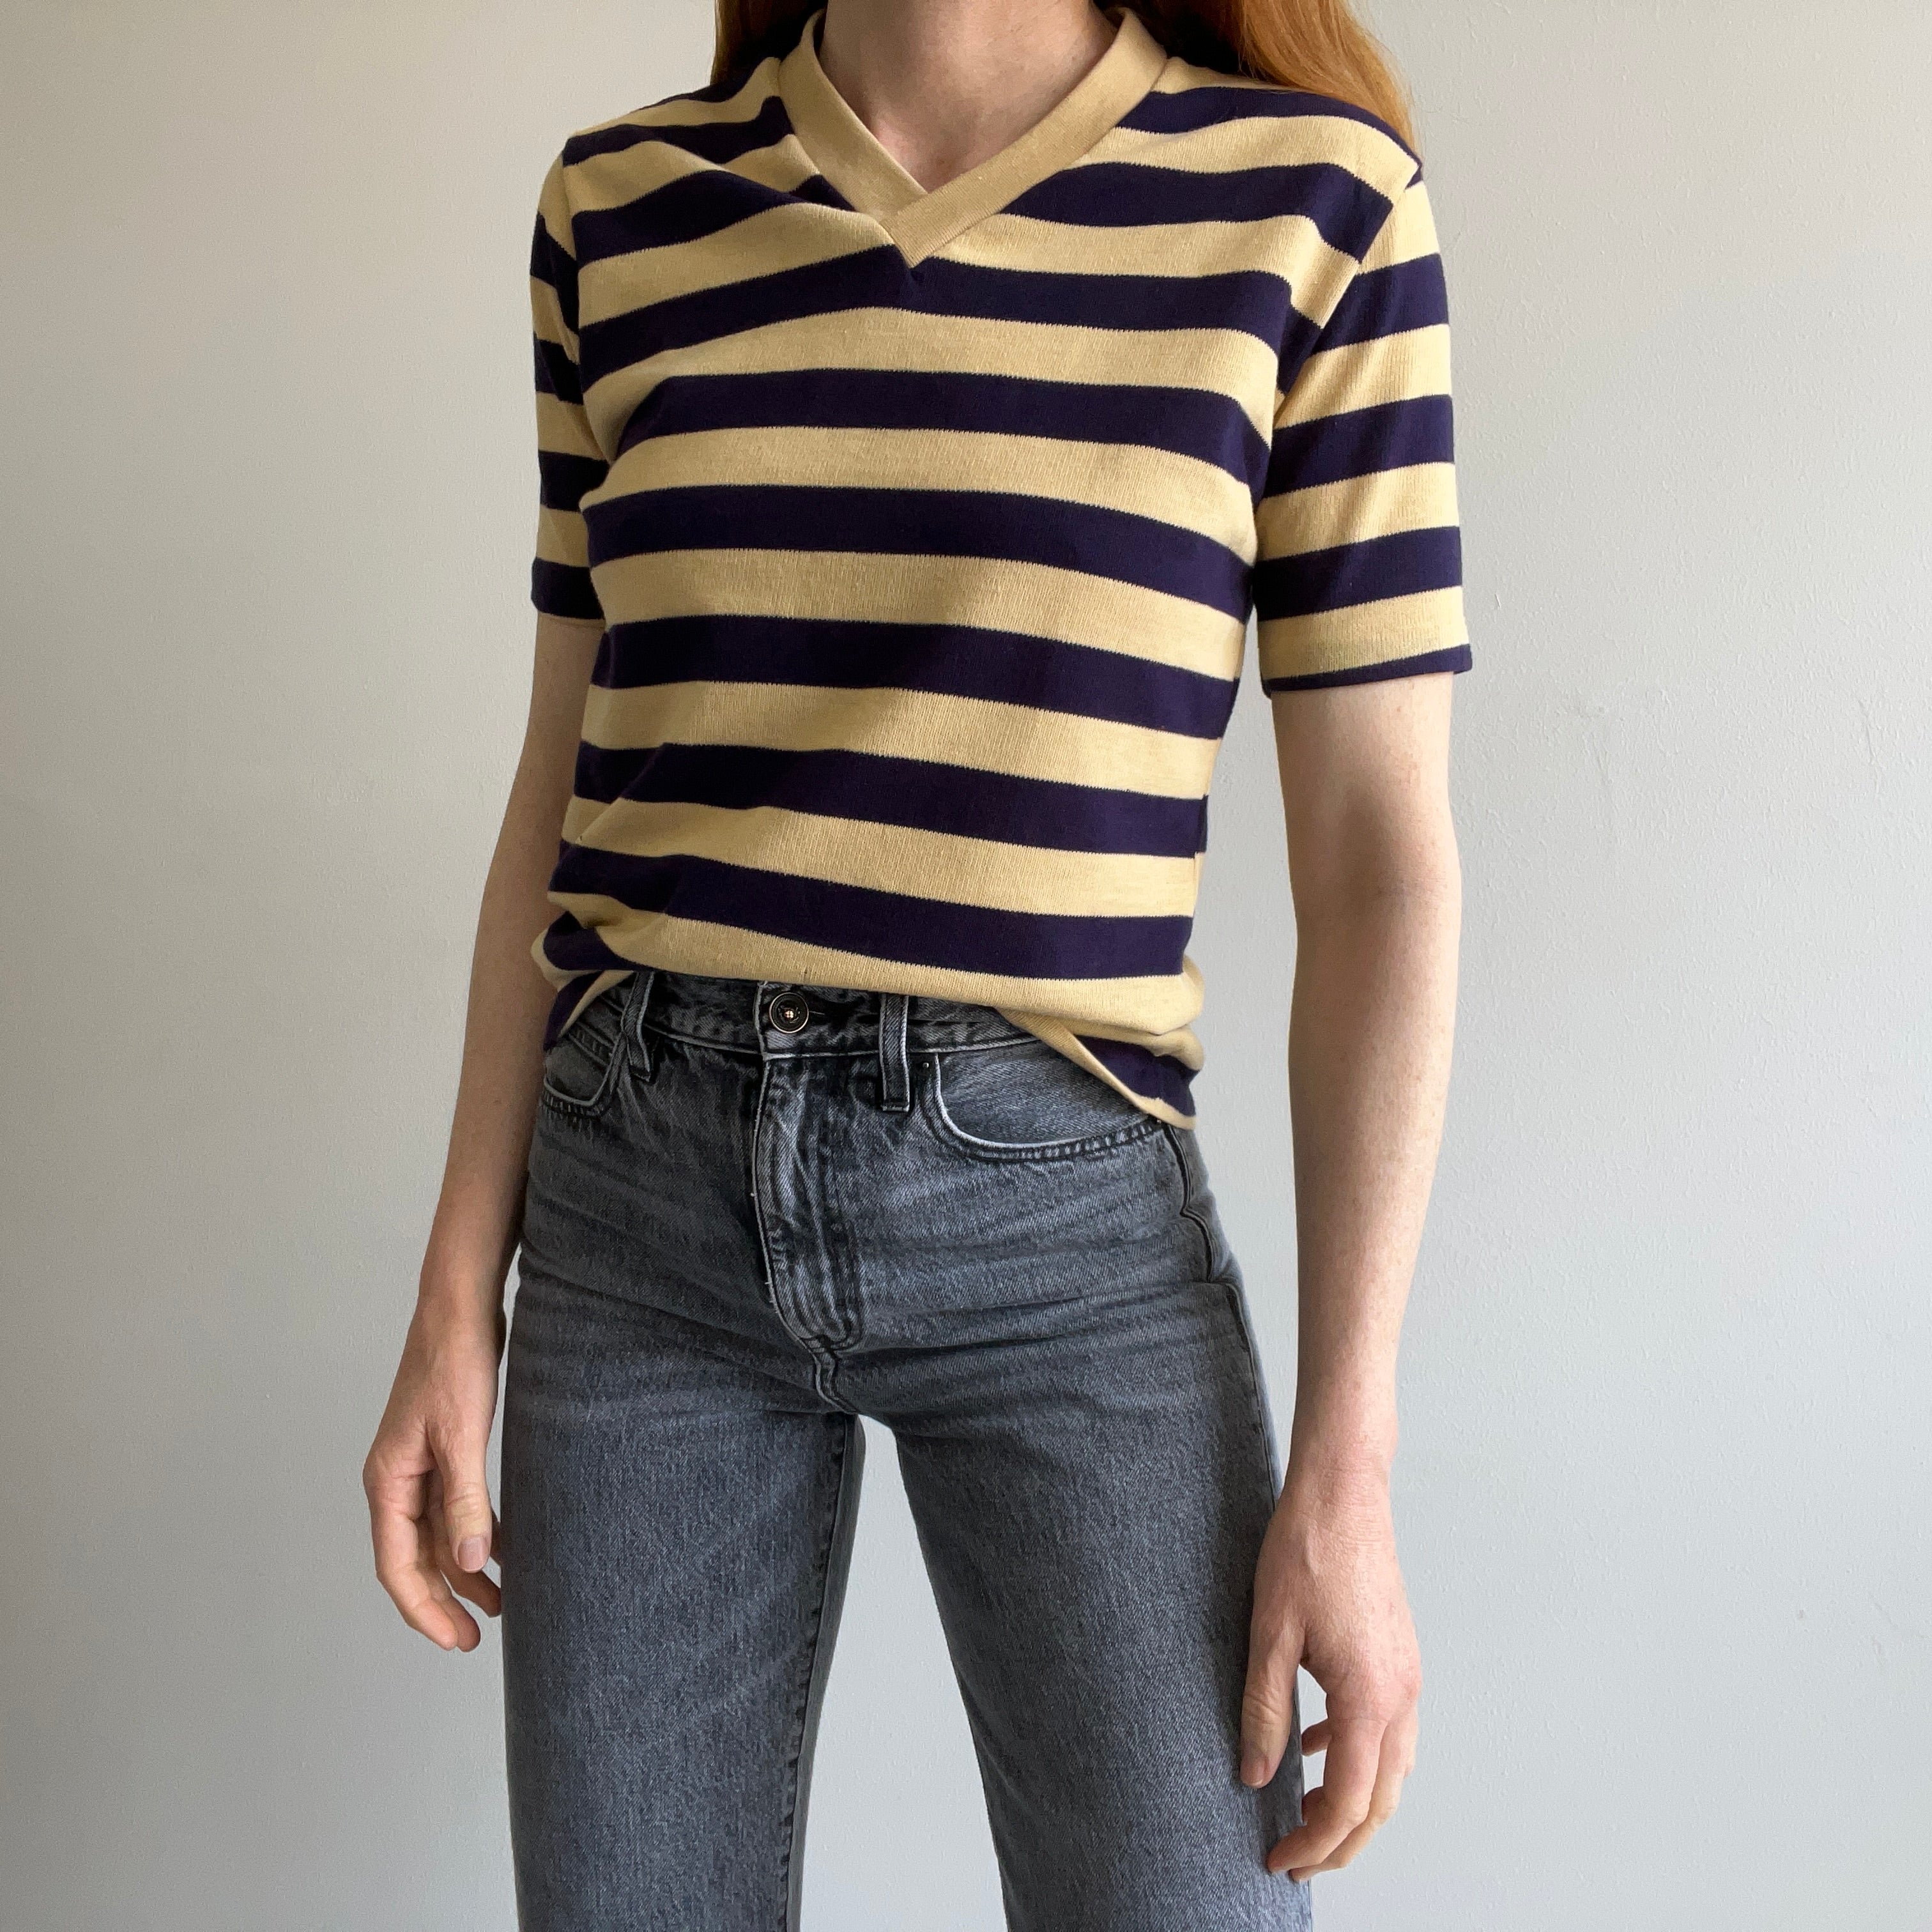 1970s Knit V-Neck Striped T-Shirt